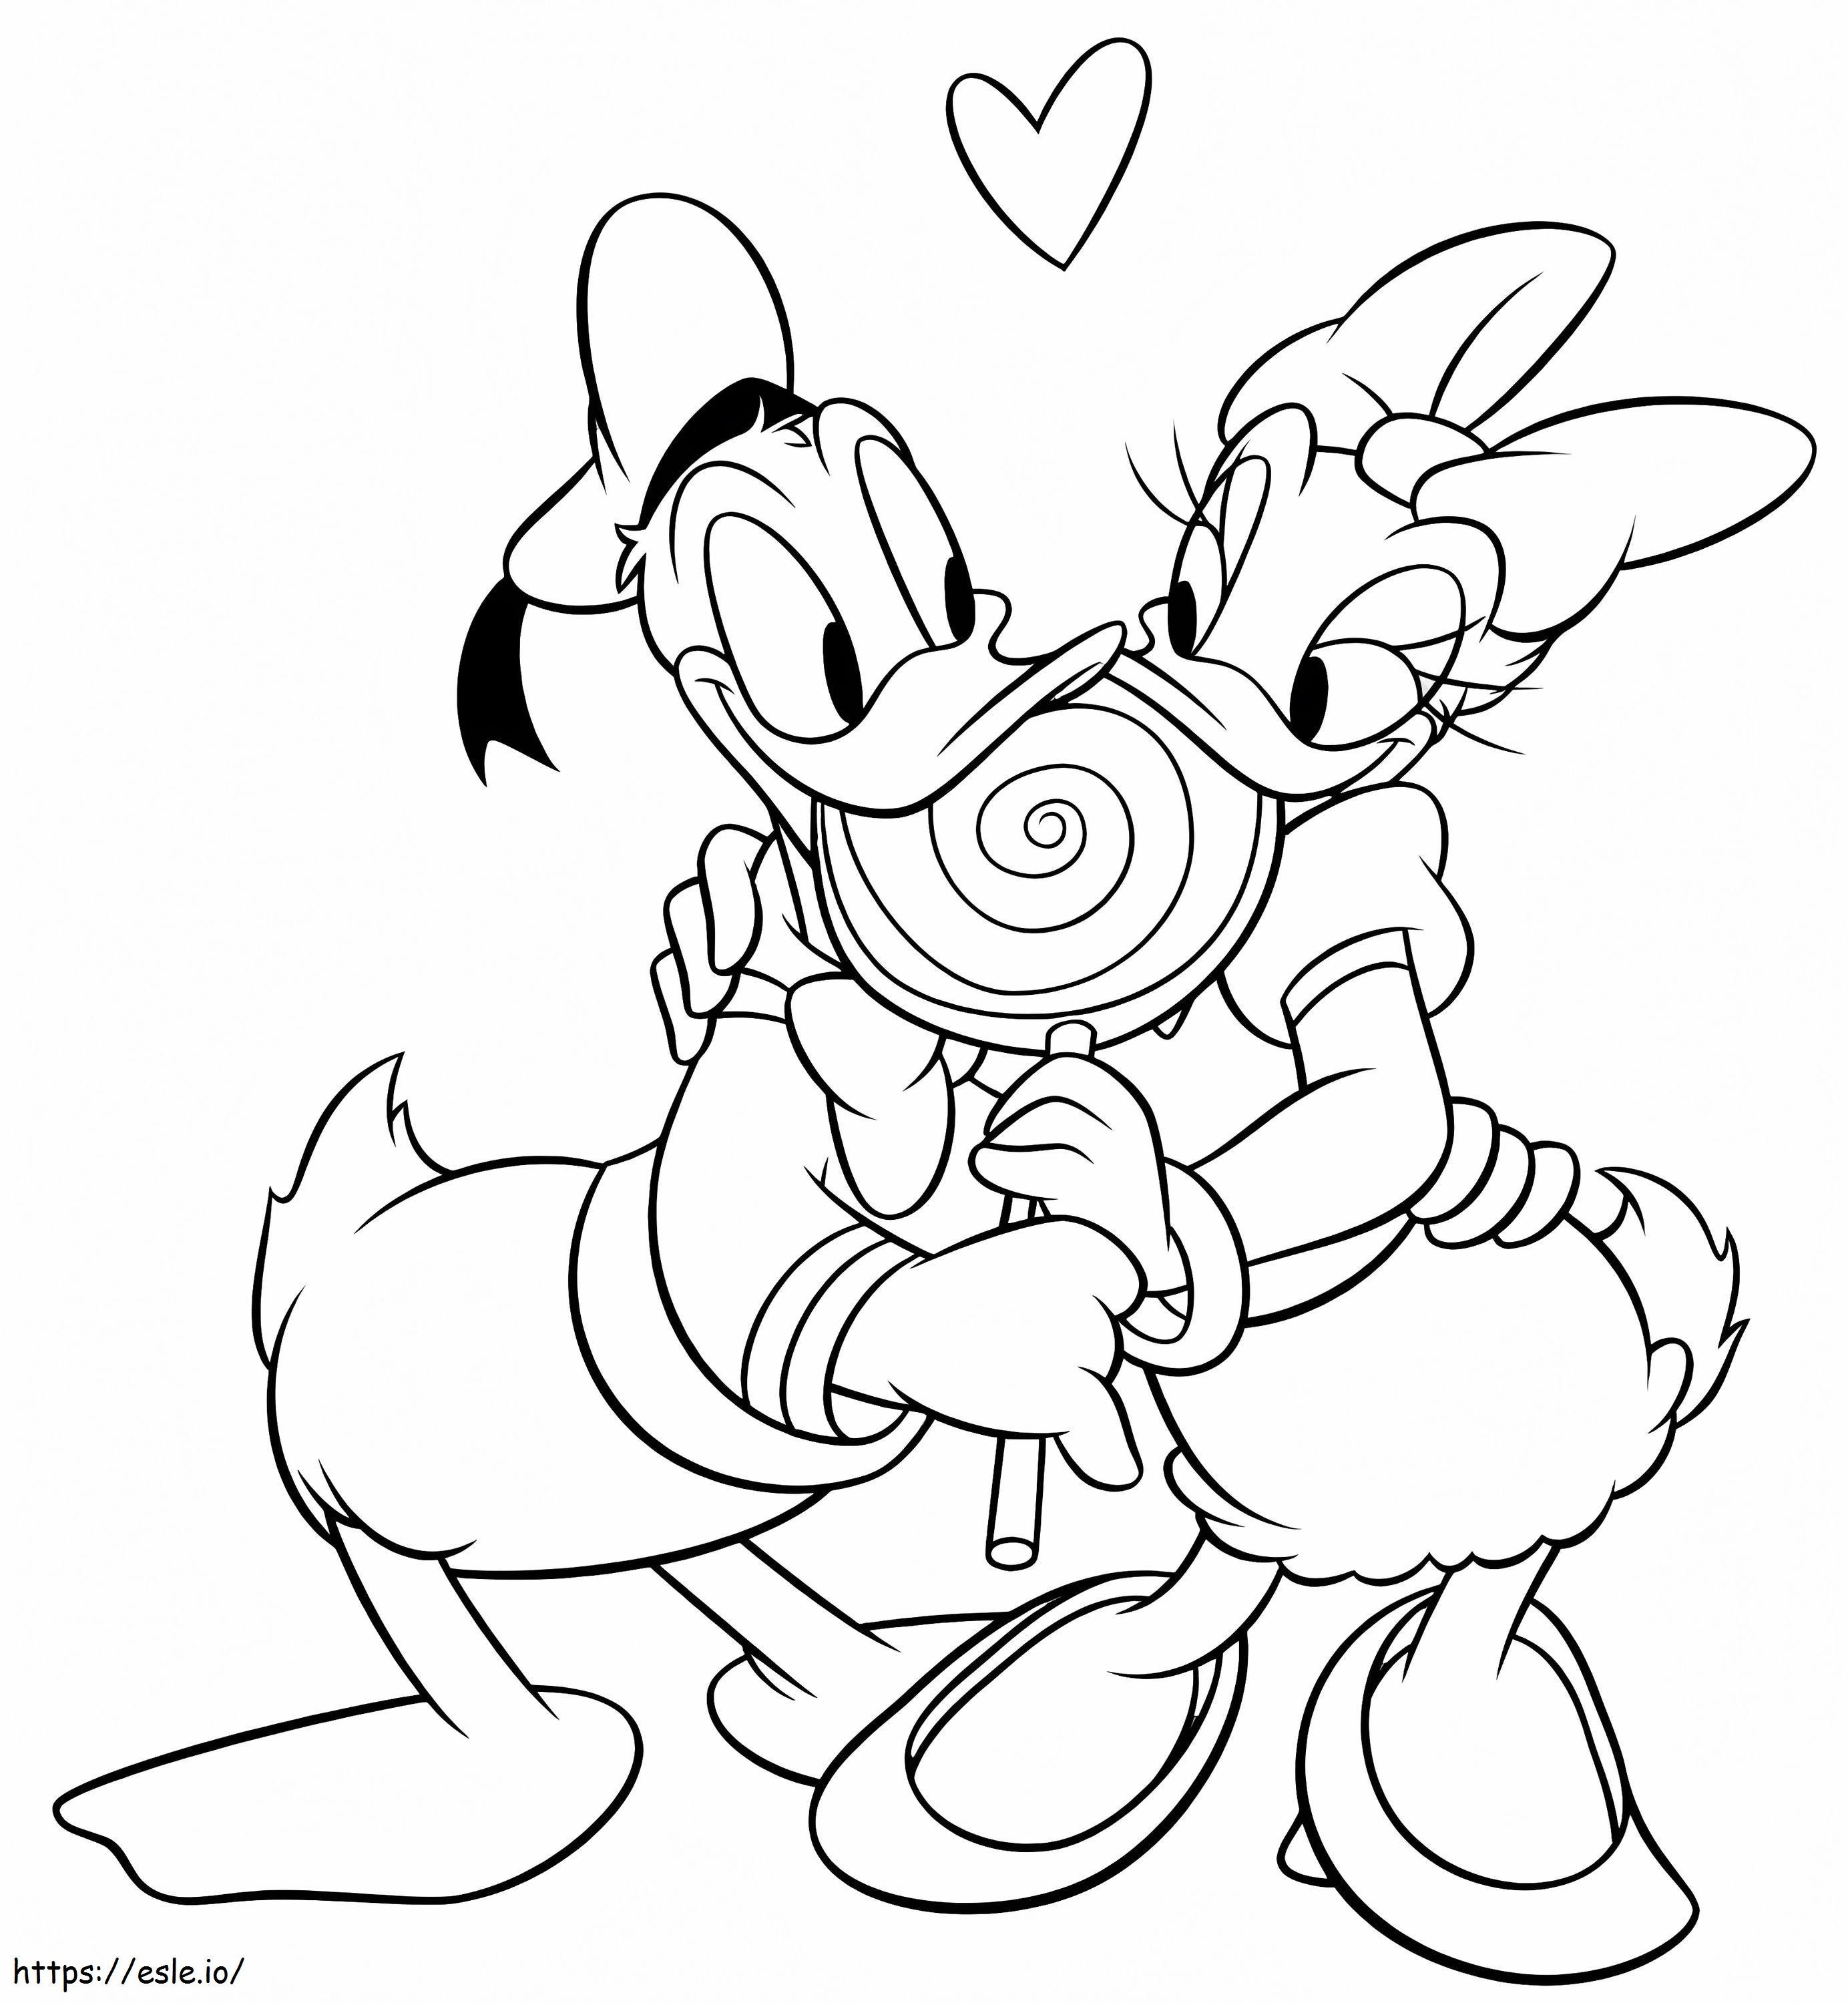 Walentynki Daisy i Donalda Disneya kolorowanka